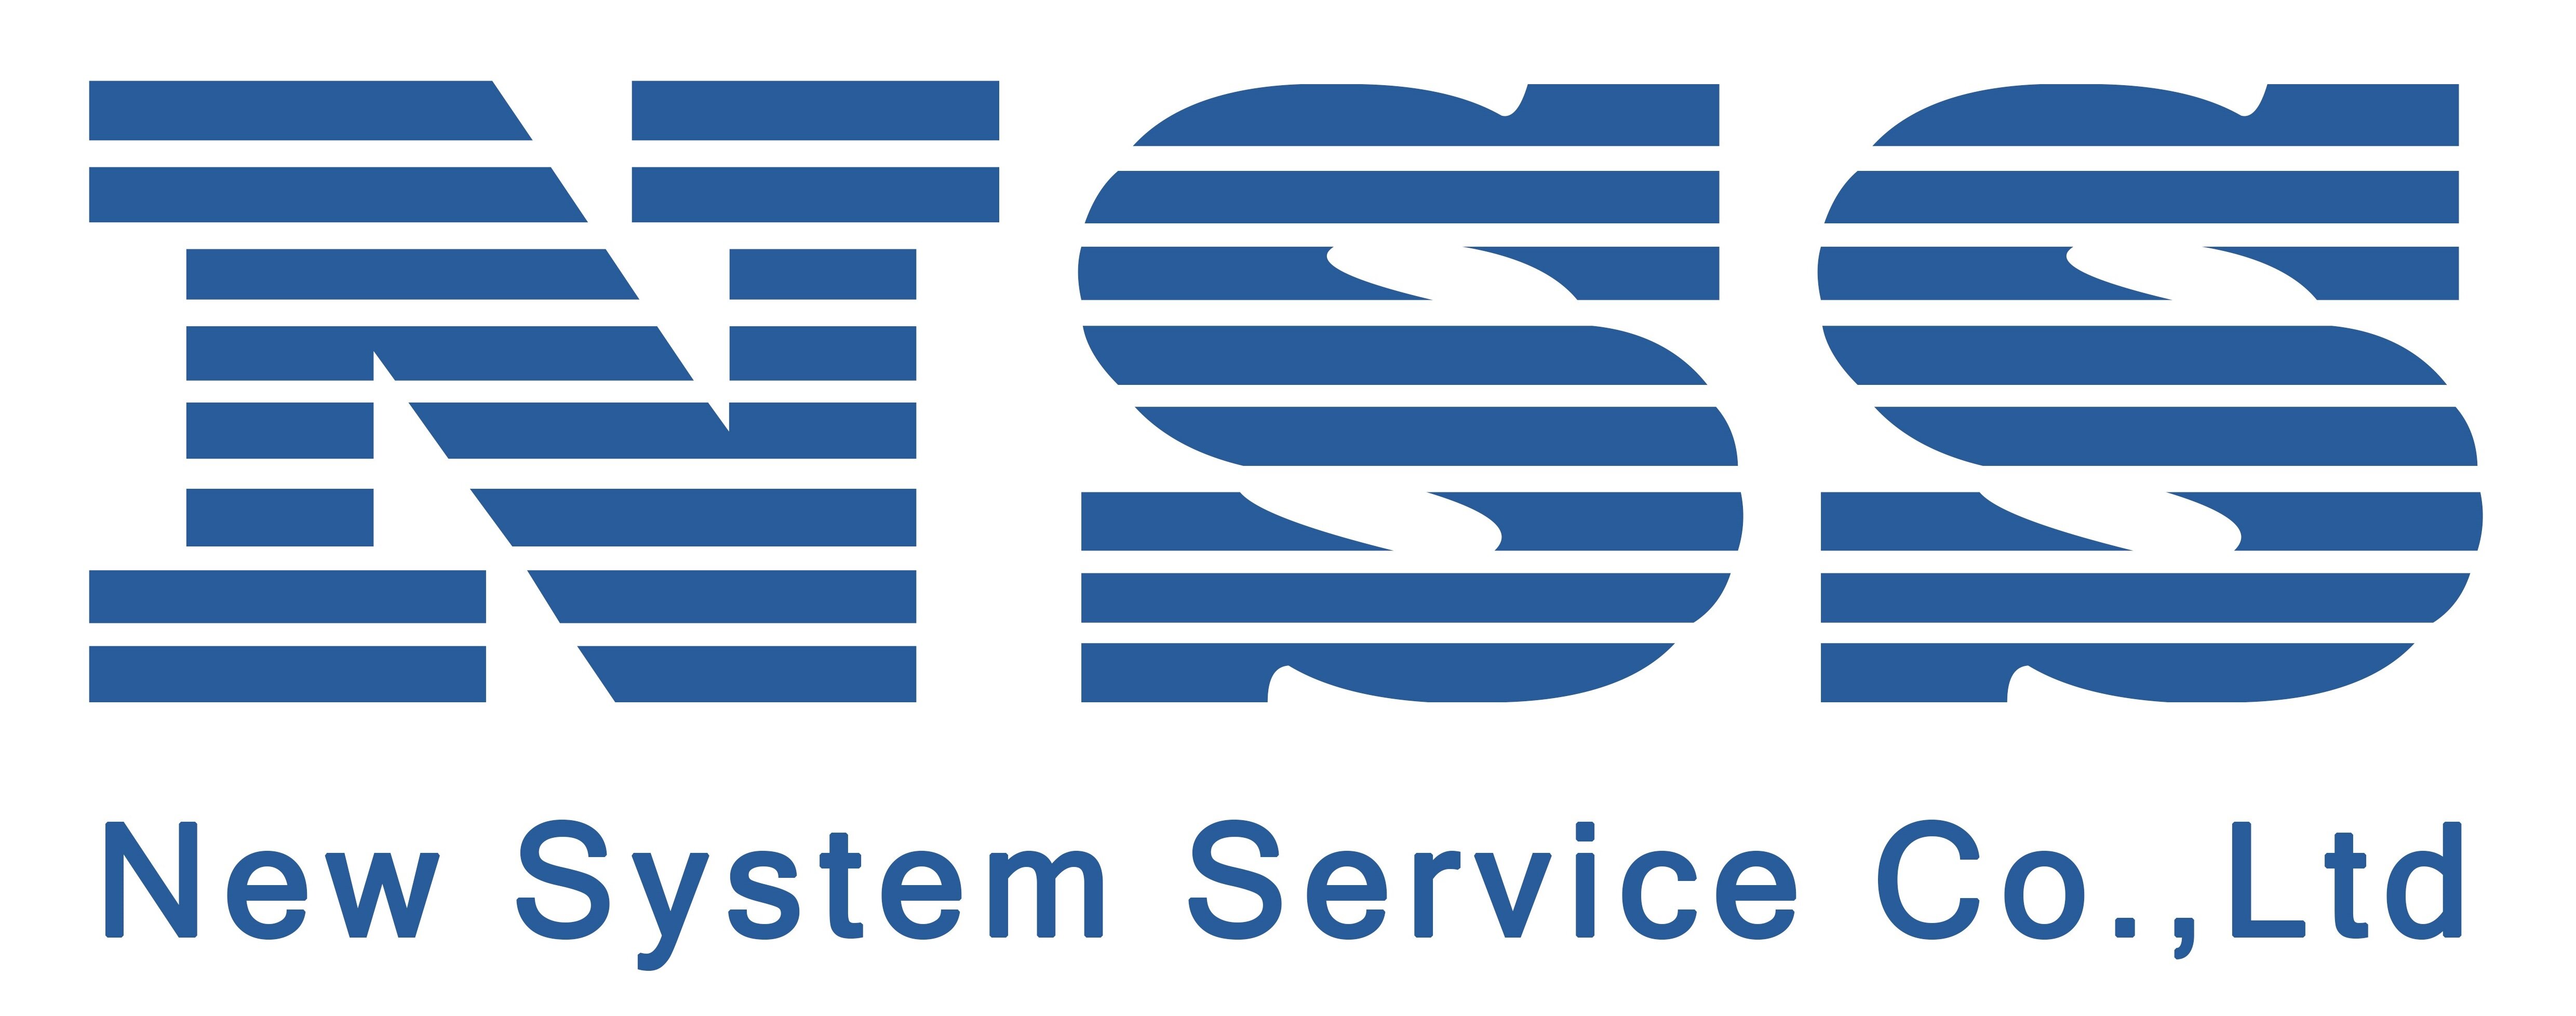 New System Service Co.,Ltd.